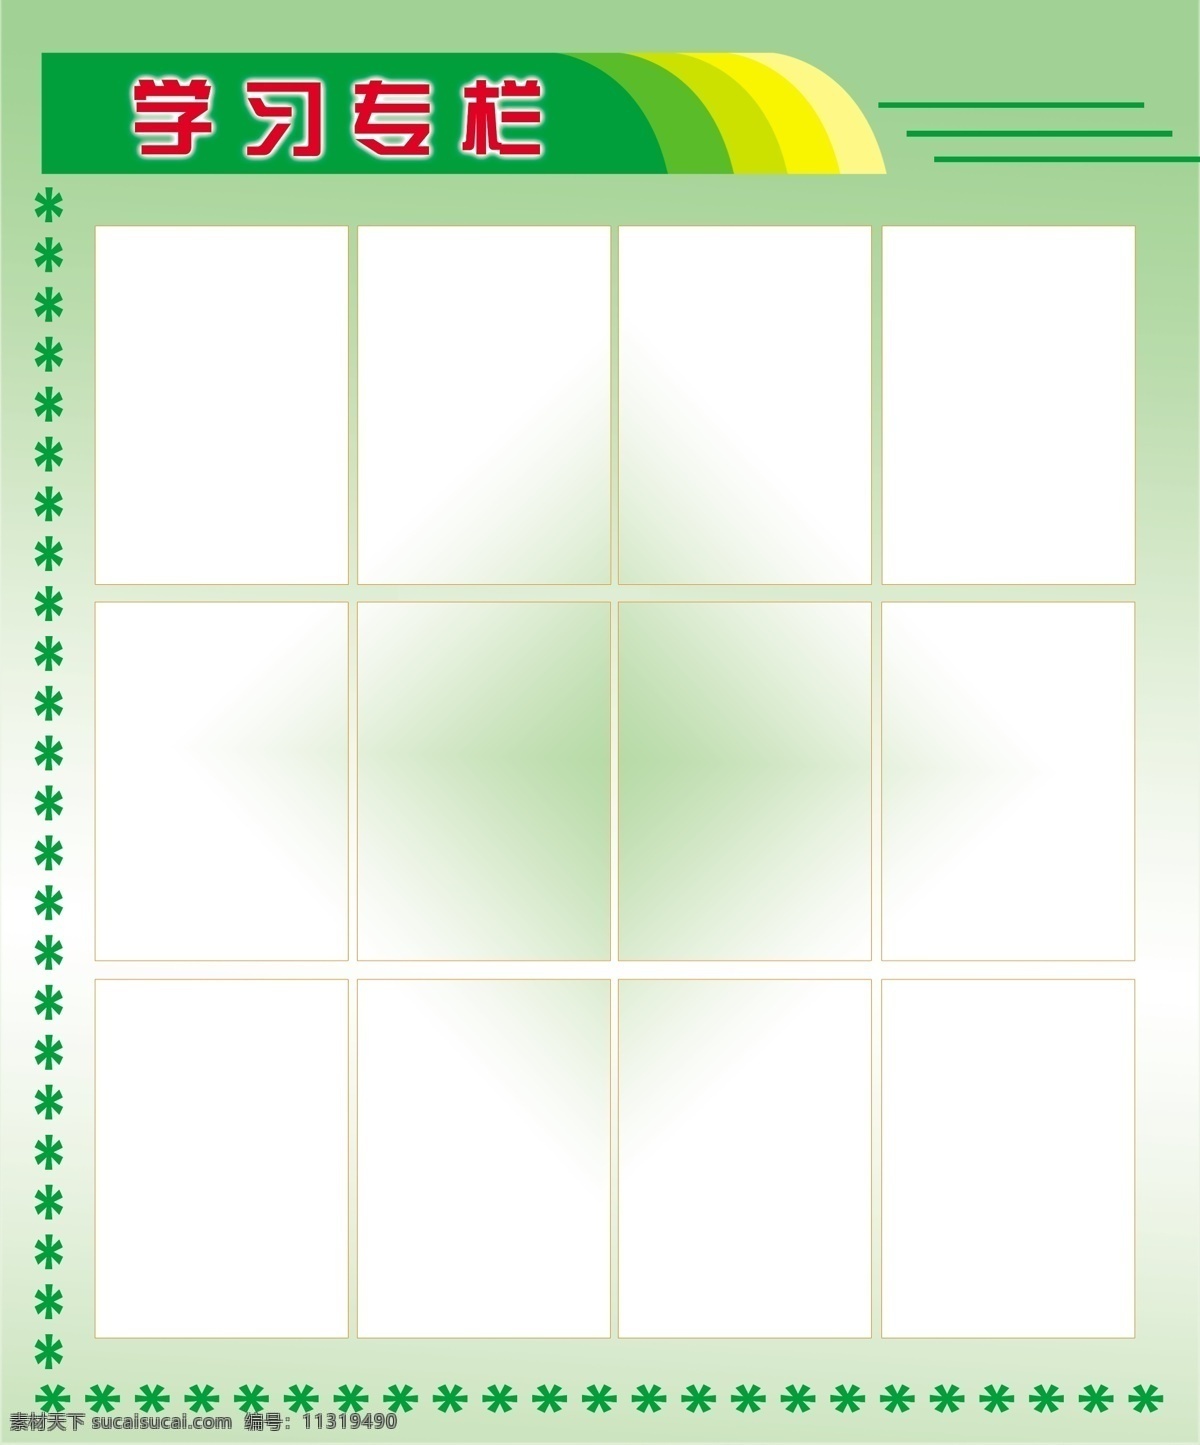 学习专栏 展板模版 绿色底纹 展板模板 广告设计模板 源文件